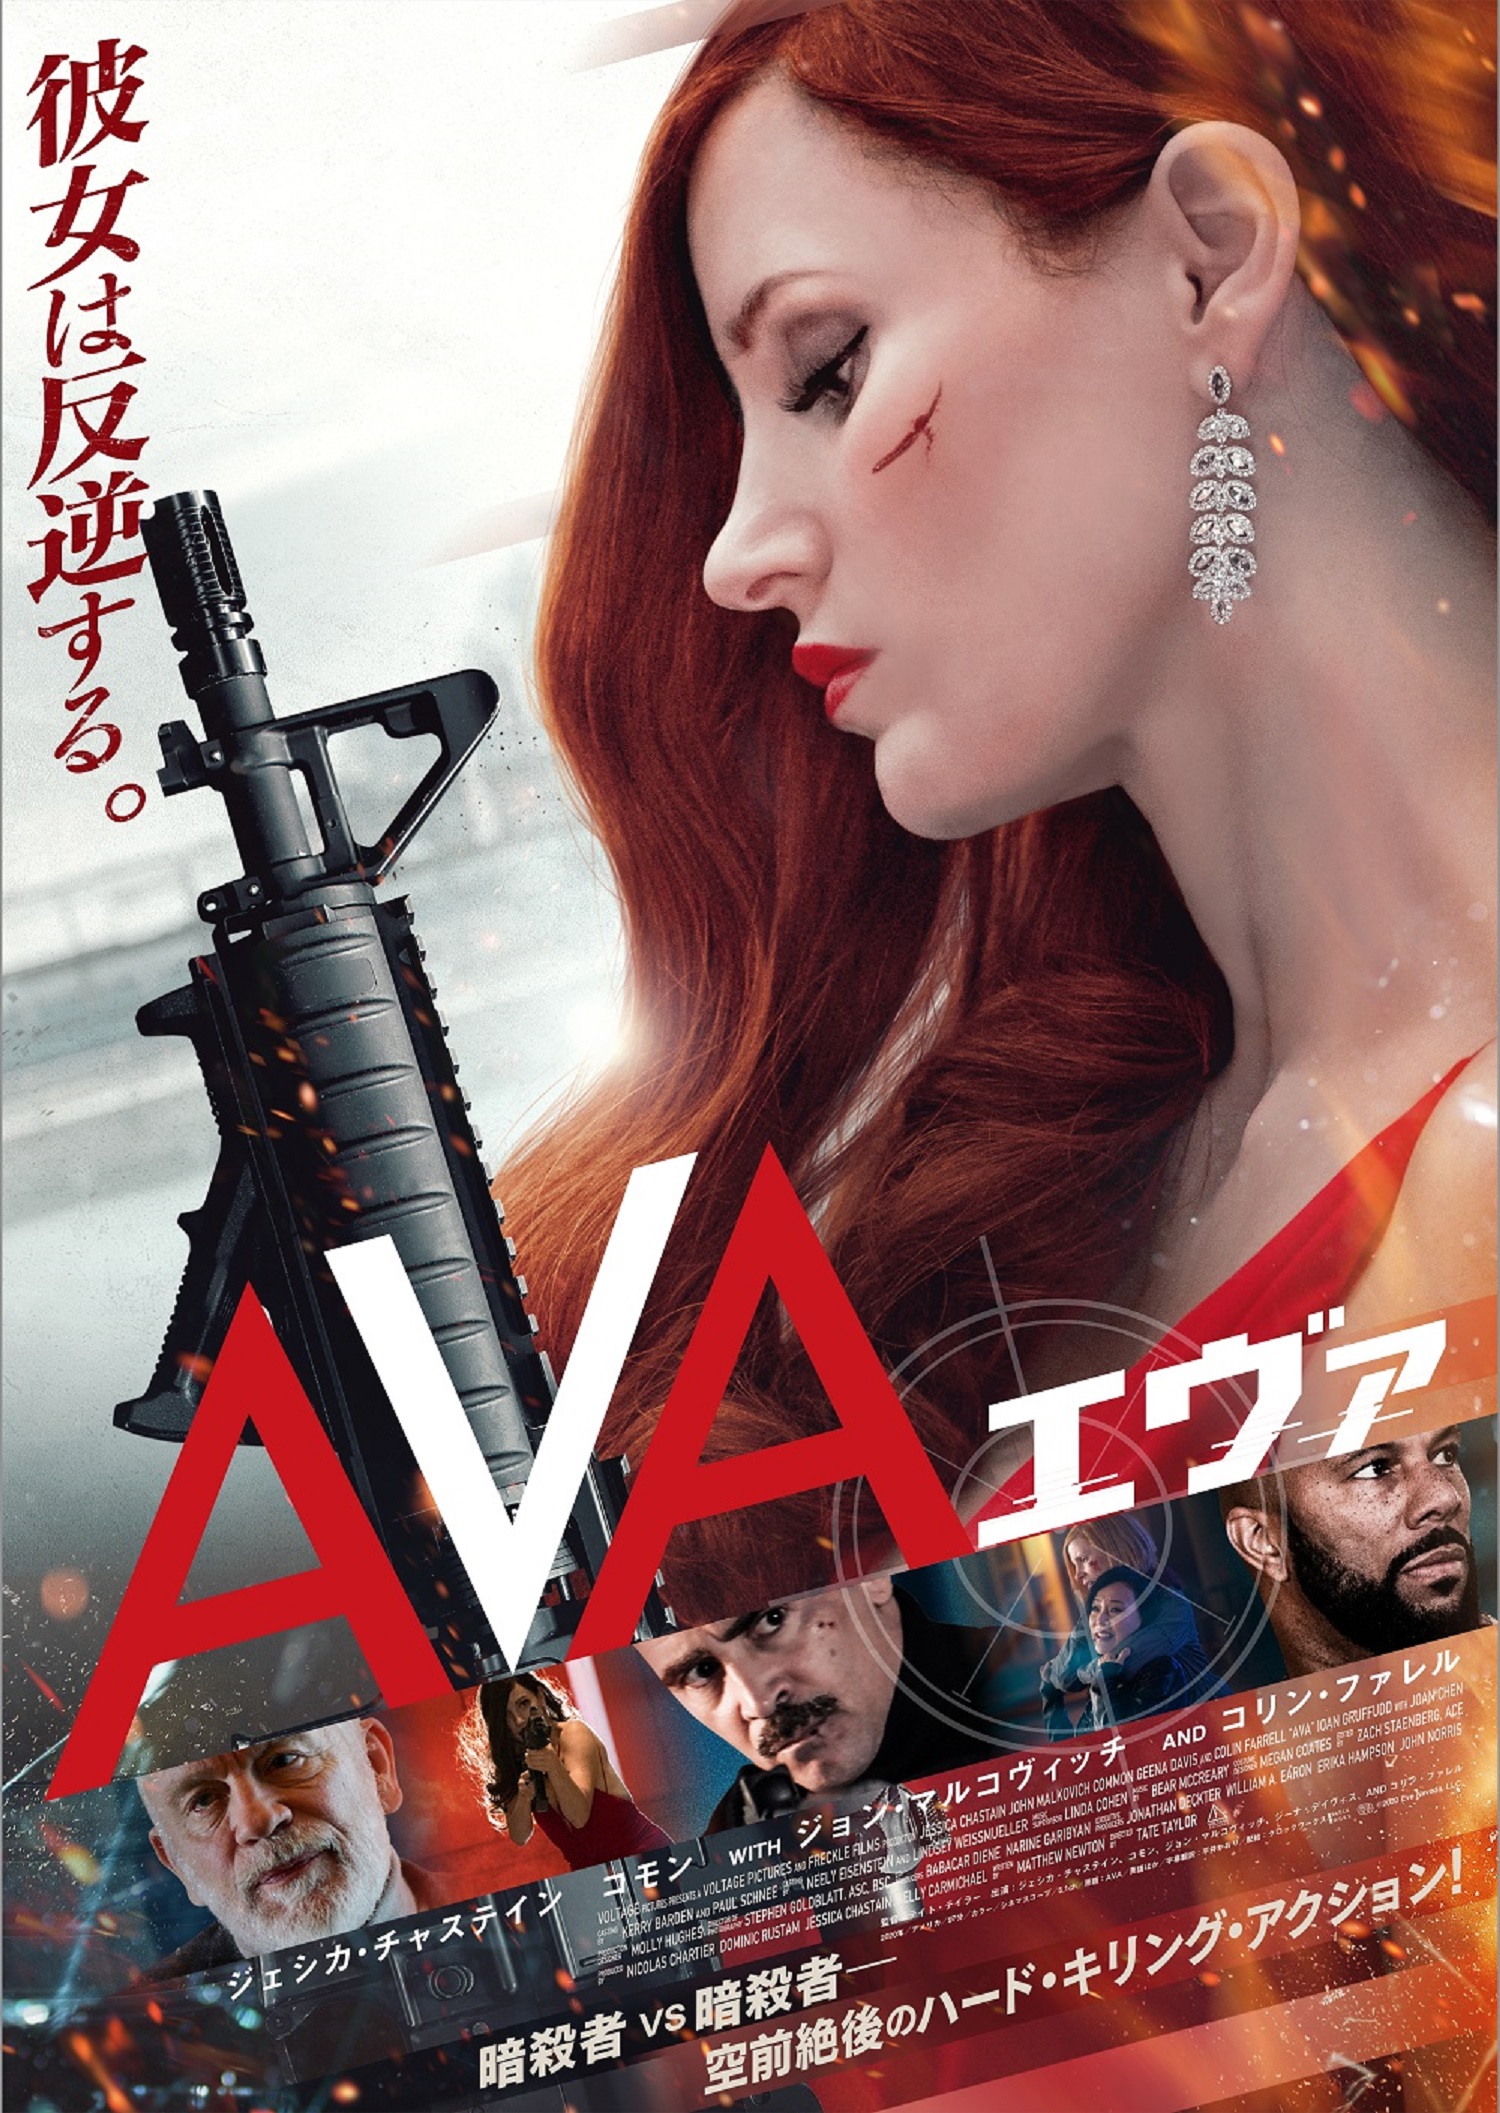 ジェシカ チャステイン 主演最新作のスパイアクションムービー Ava エヴァ Blu Ray Dvdが9 24発売決定 株式会社ハピネットのプレスリリース